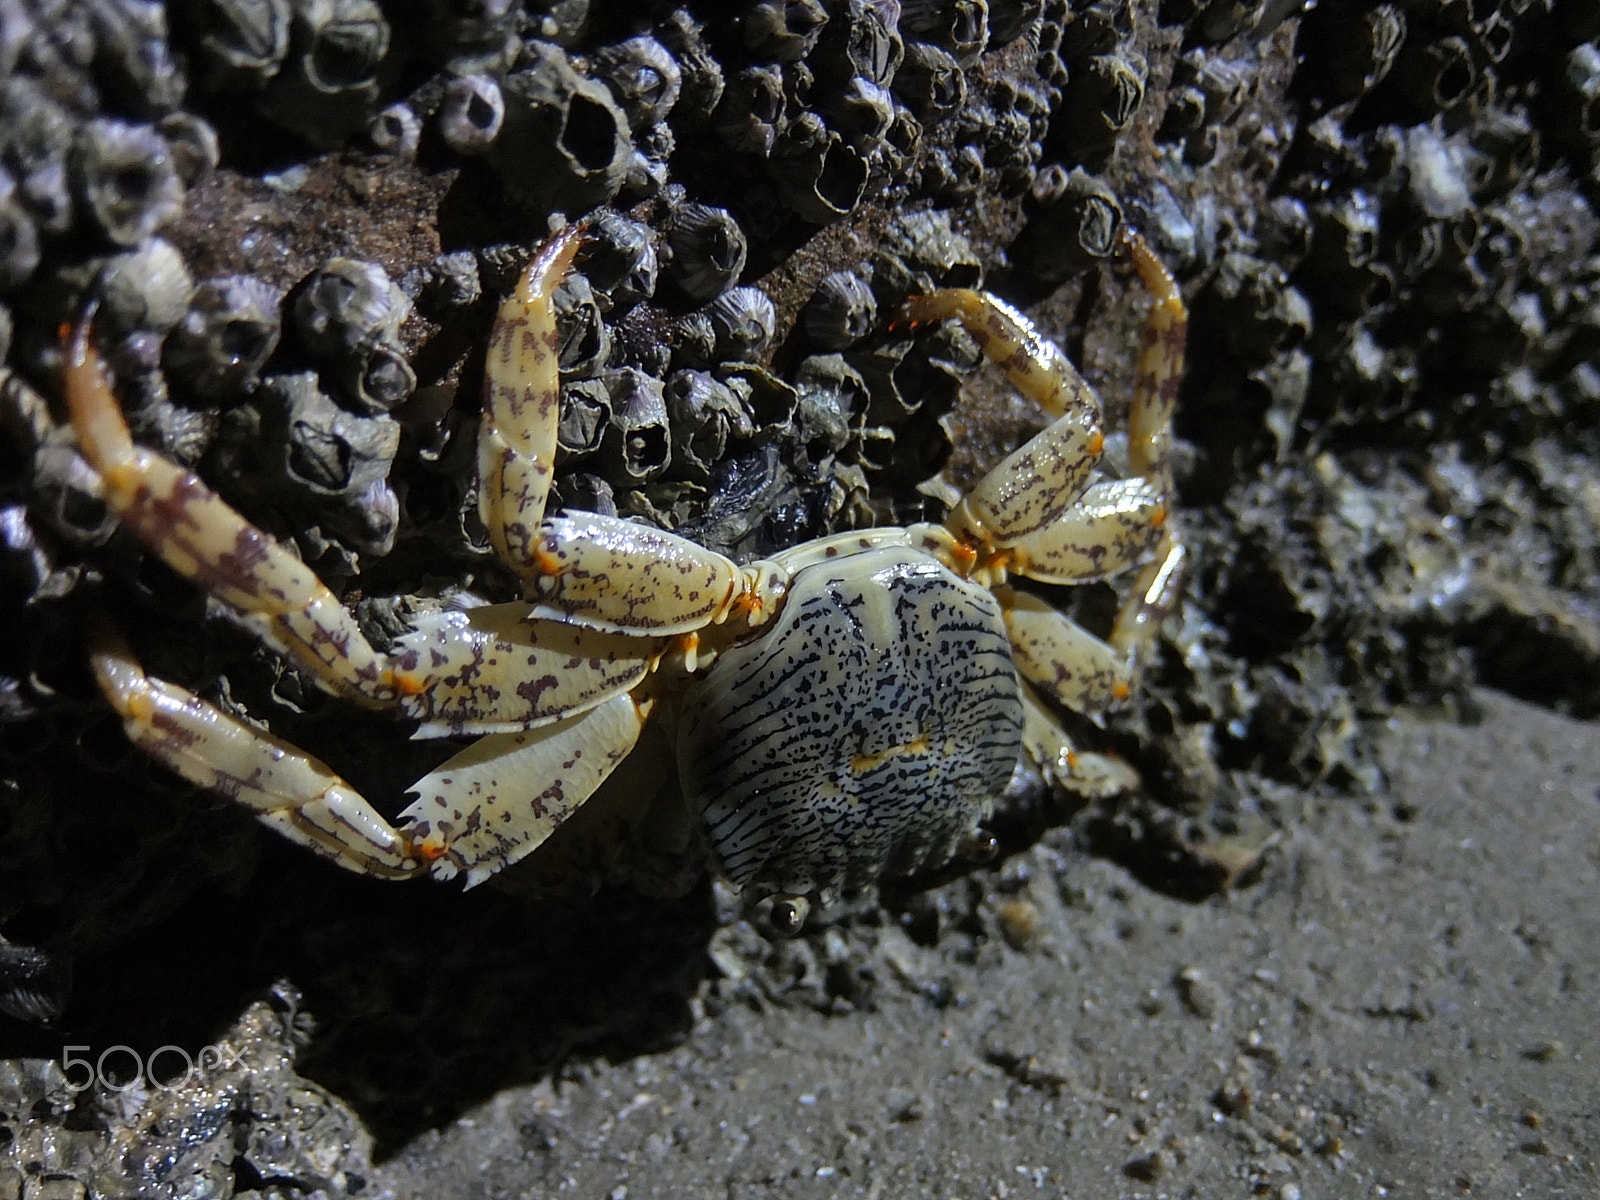 Fujifilm XF1 sample photo. Night crab photography